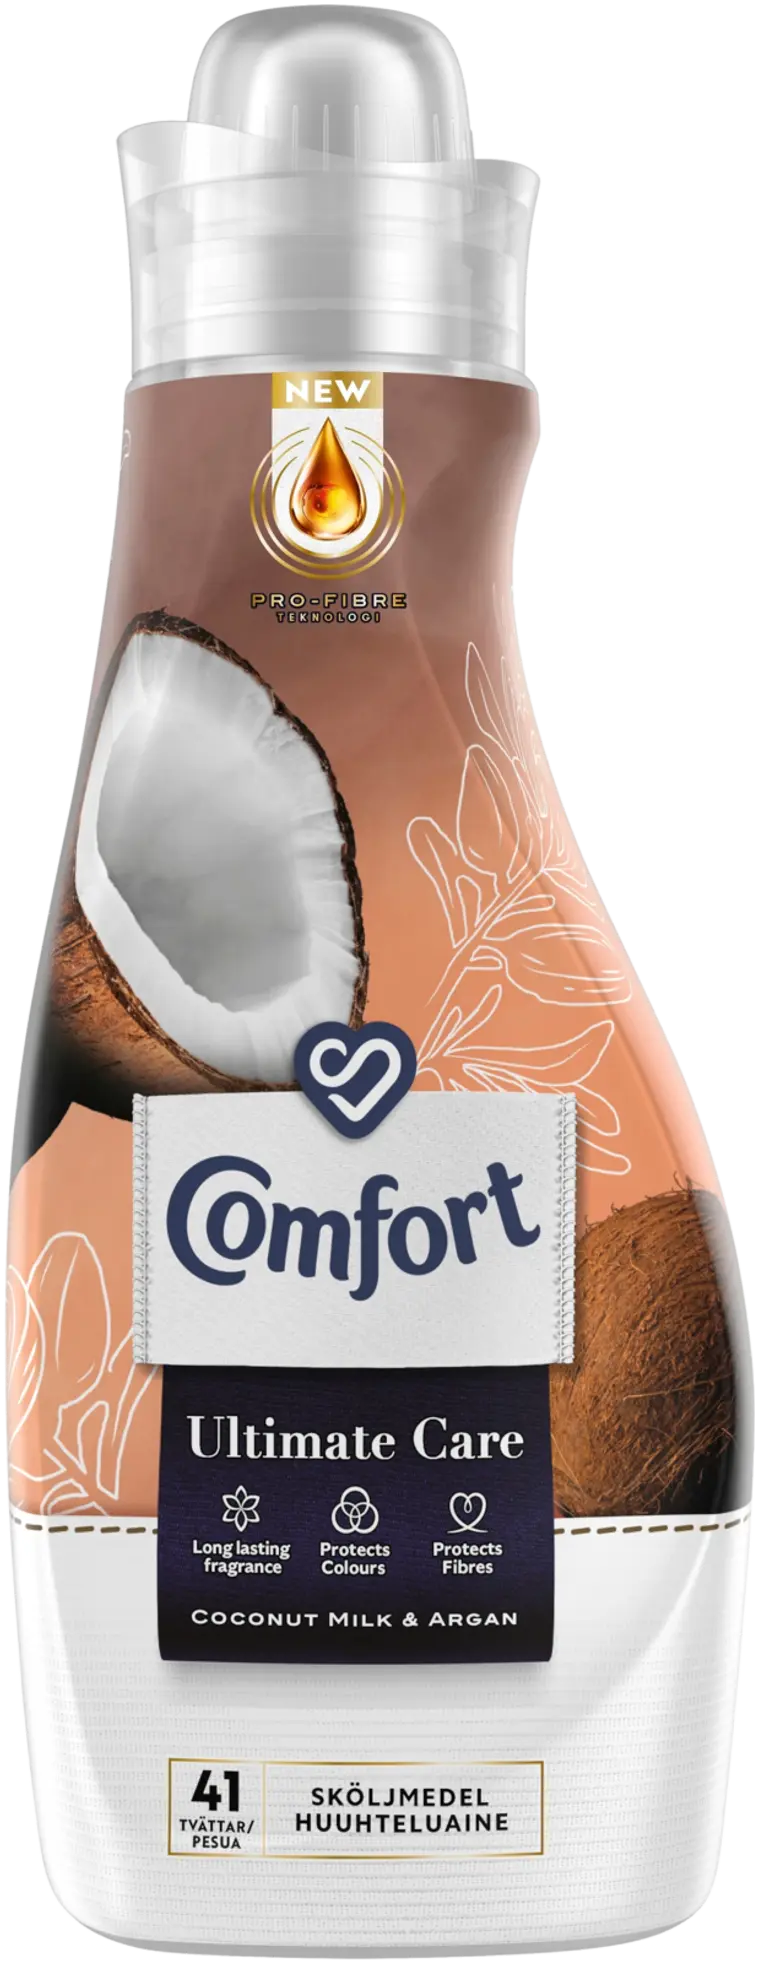 Comfort Revive Coconut Milk & Argan Huuhteluaine Pitkäkestoinen tuoksu Pehmeät vaatteet 750 ml 41 pesua